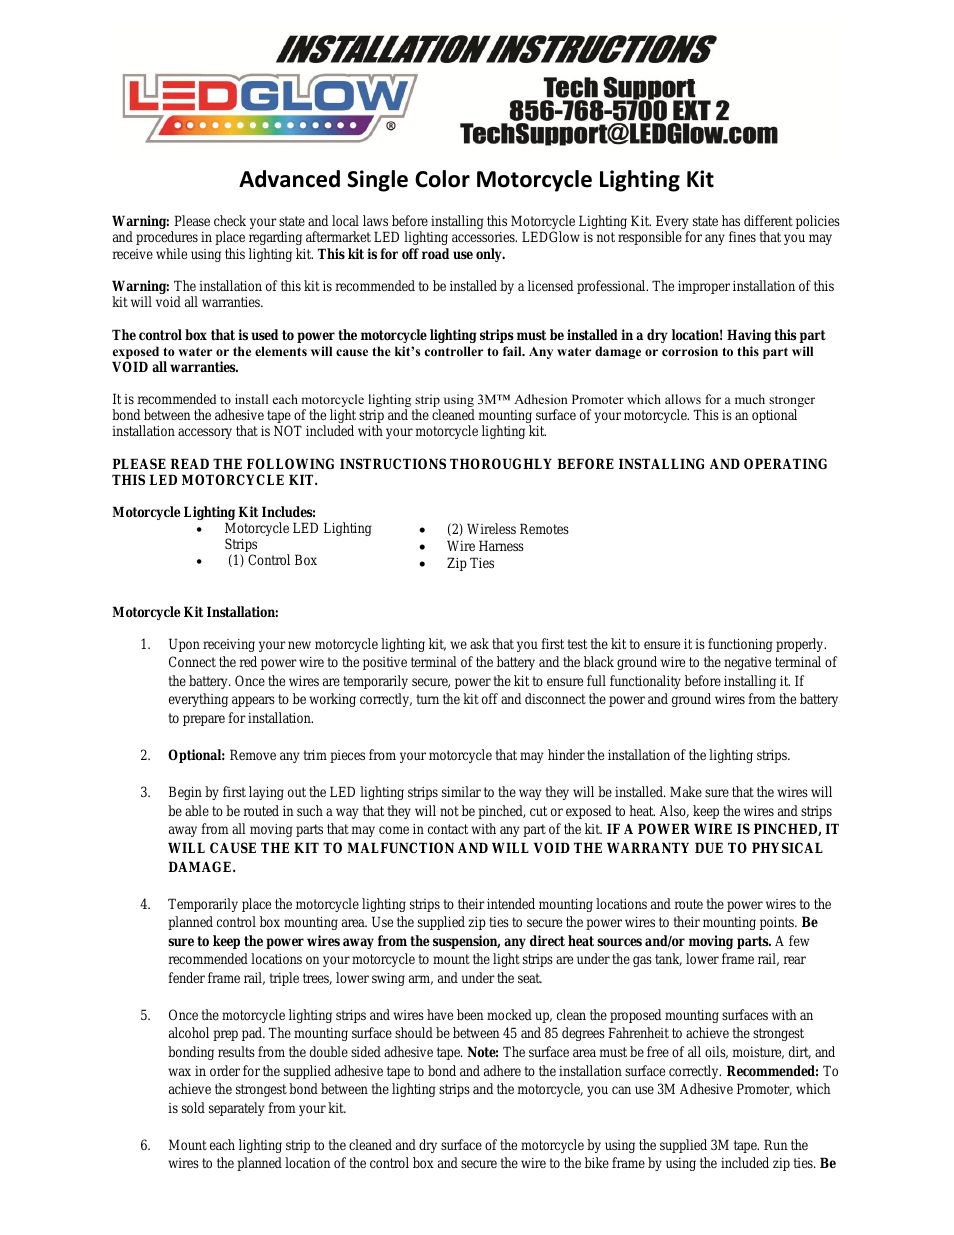 Advanced Single Color Flexible Motorcycle Light Kit